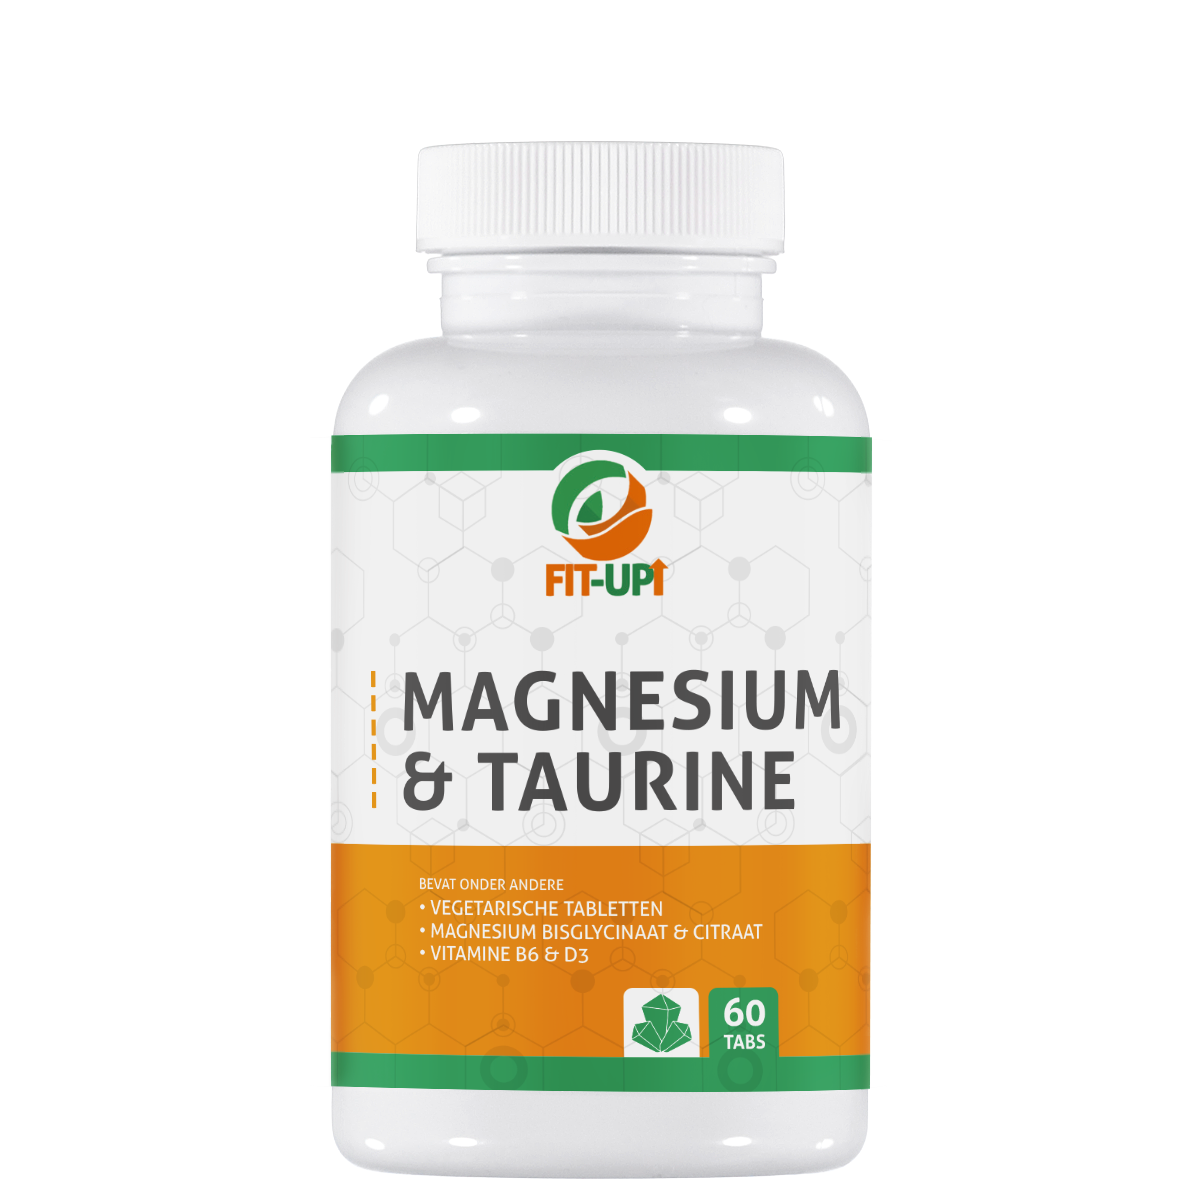 Magnesium & Taurine - 60 Tabs